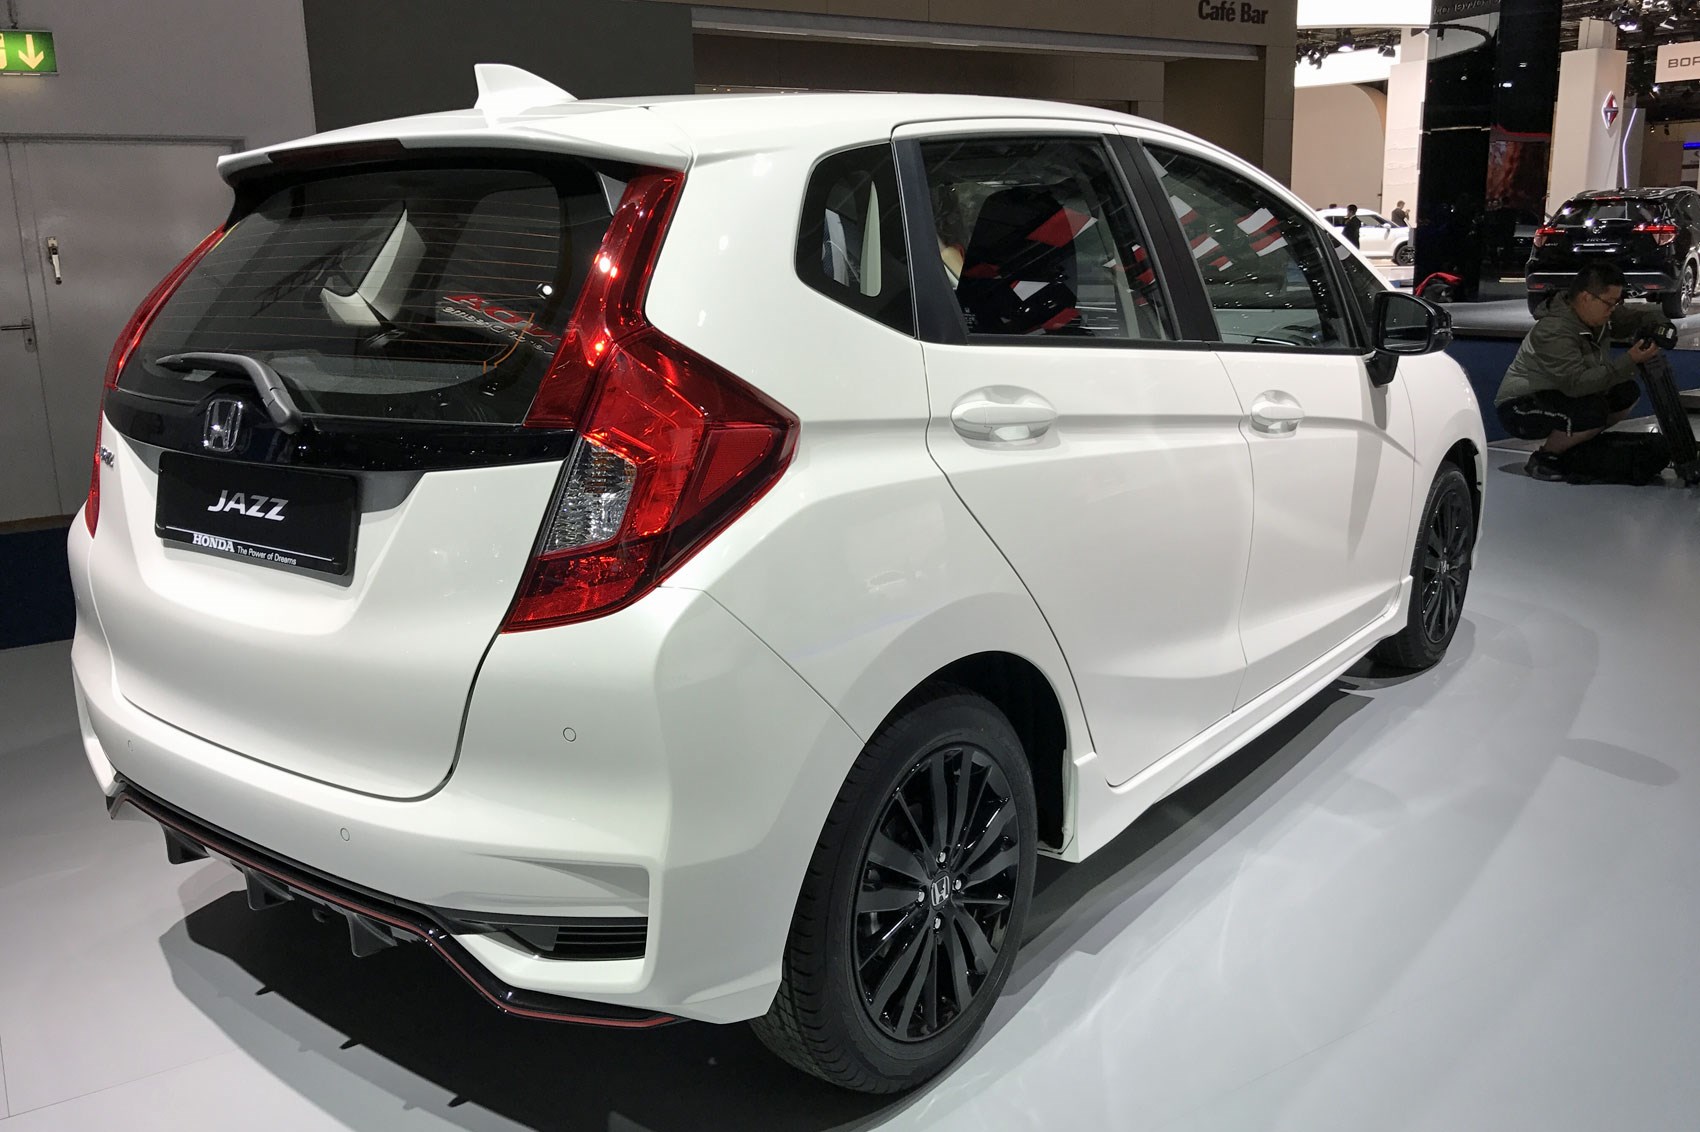 New Honda Jazz 18 Uk Prices For Facelifted Mini Civic Revealed Car Magazine